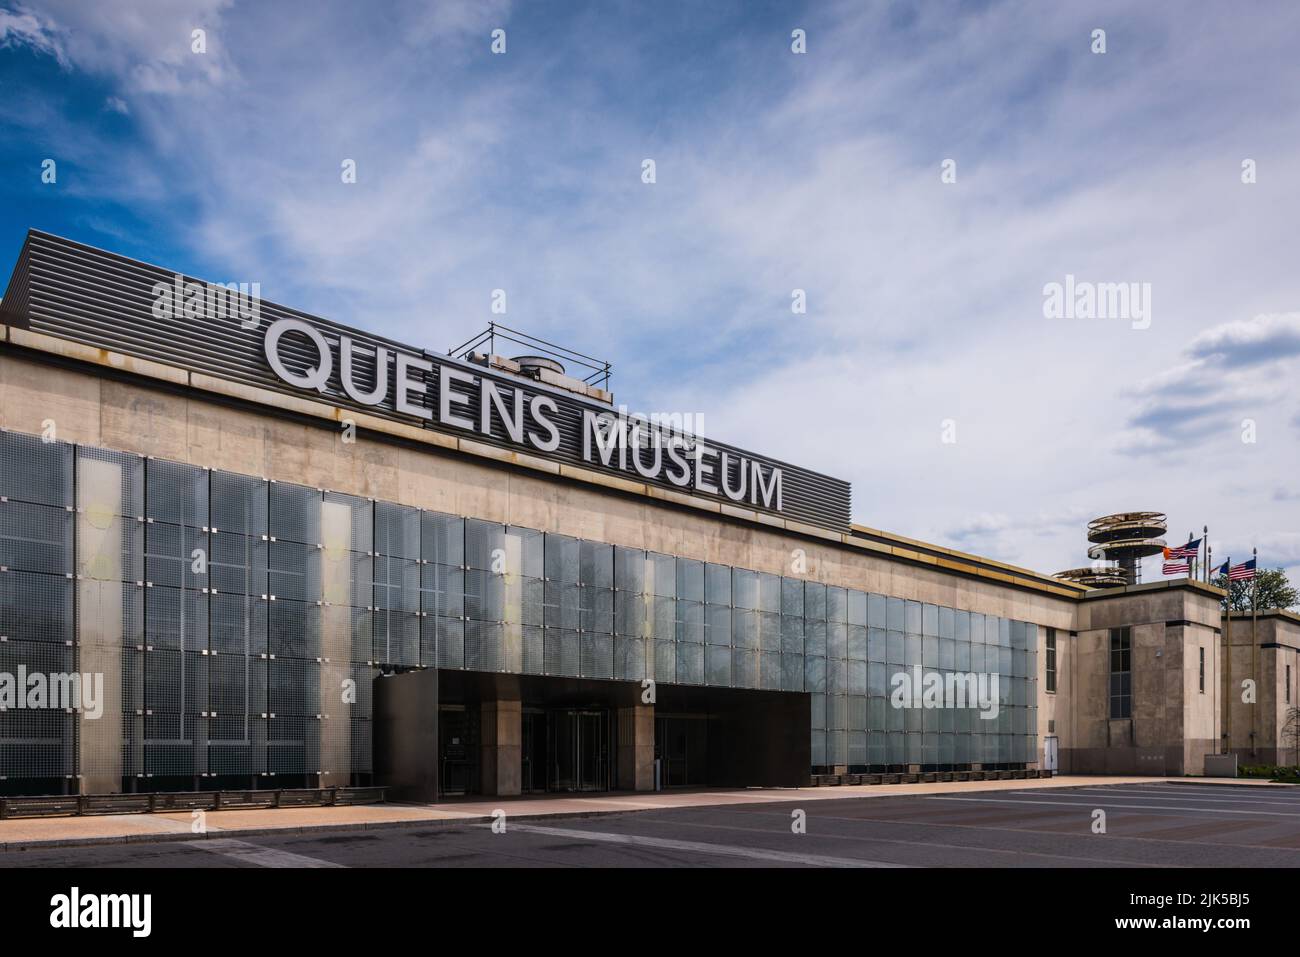 Nueva York, NY/USA - 05-09-2016: El Museo de Queens, antes conocido como el Museo de Arte de Queens, es un museo de arte y centro educativo ubicado en Flushing Meado Foto de stock